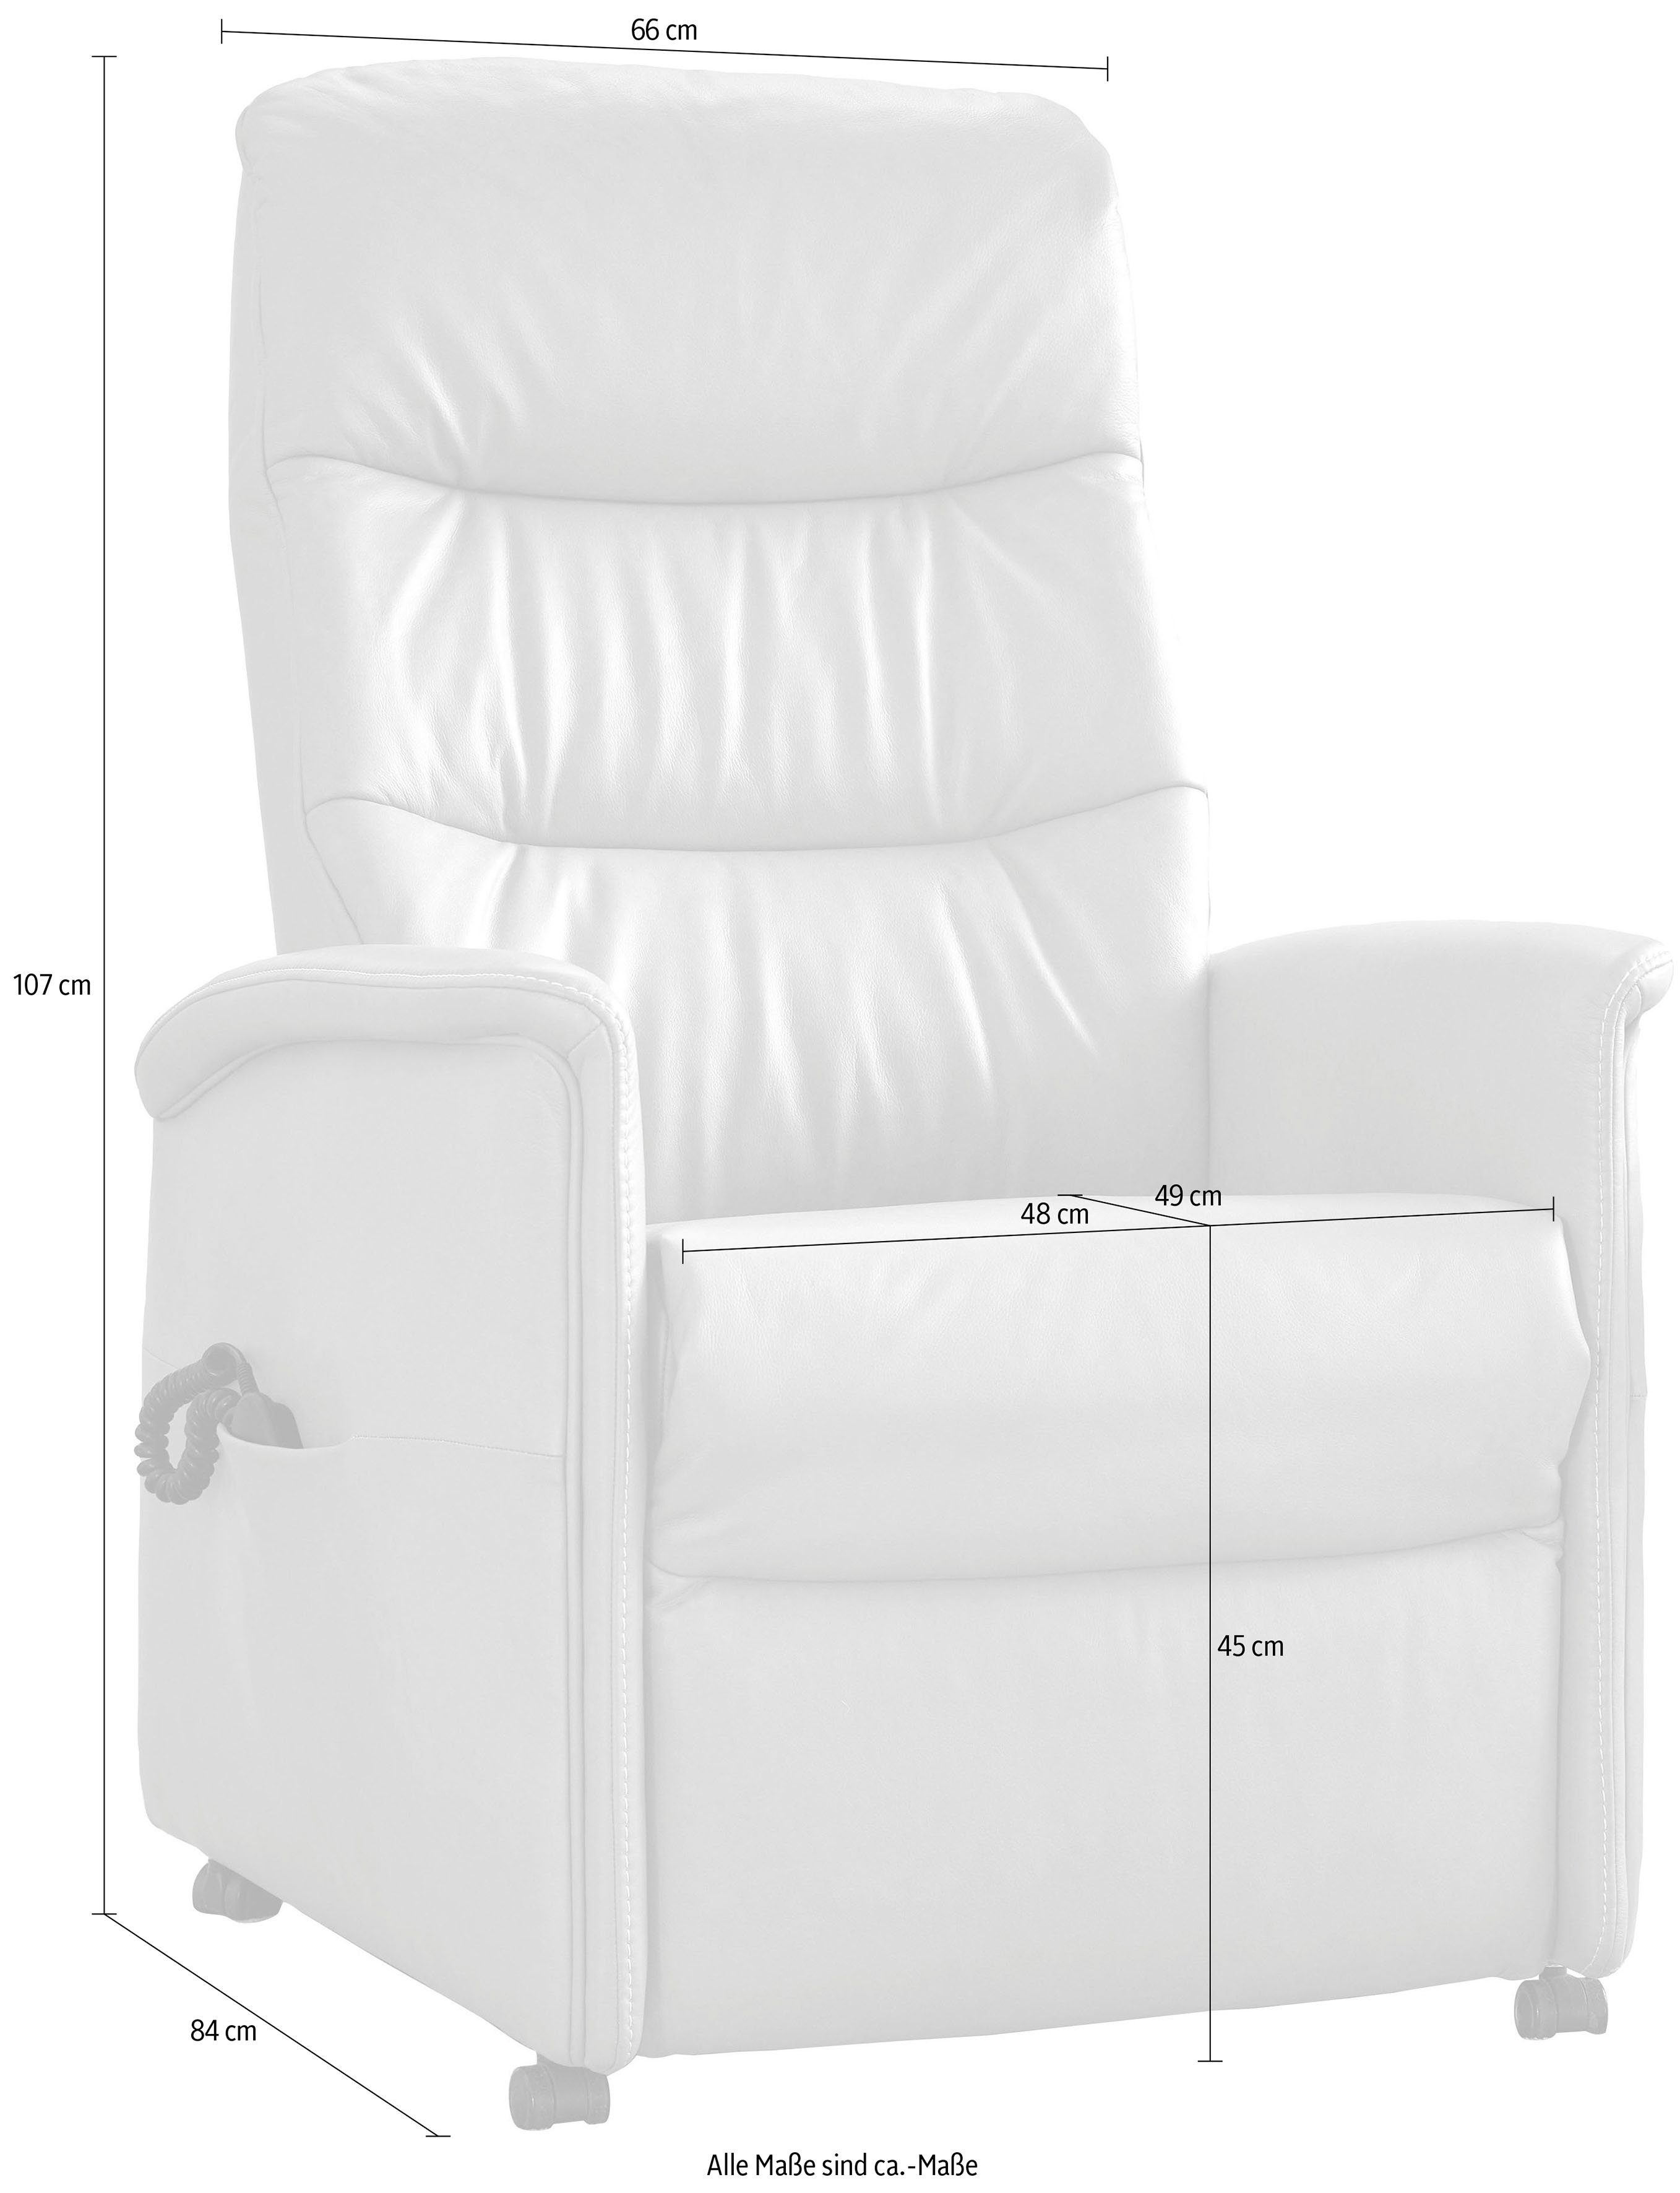 himolla Relaxsessel Aufstehhilfe 3 himolla elektrisch oder in Sitzhöhen, verstellbar, 9051, manuell